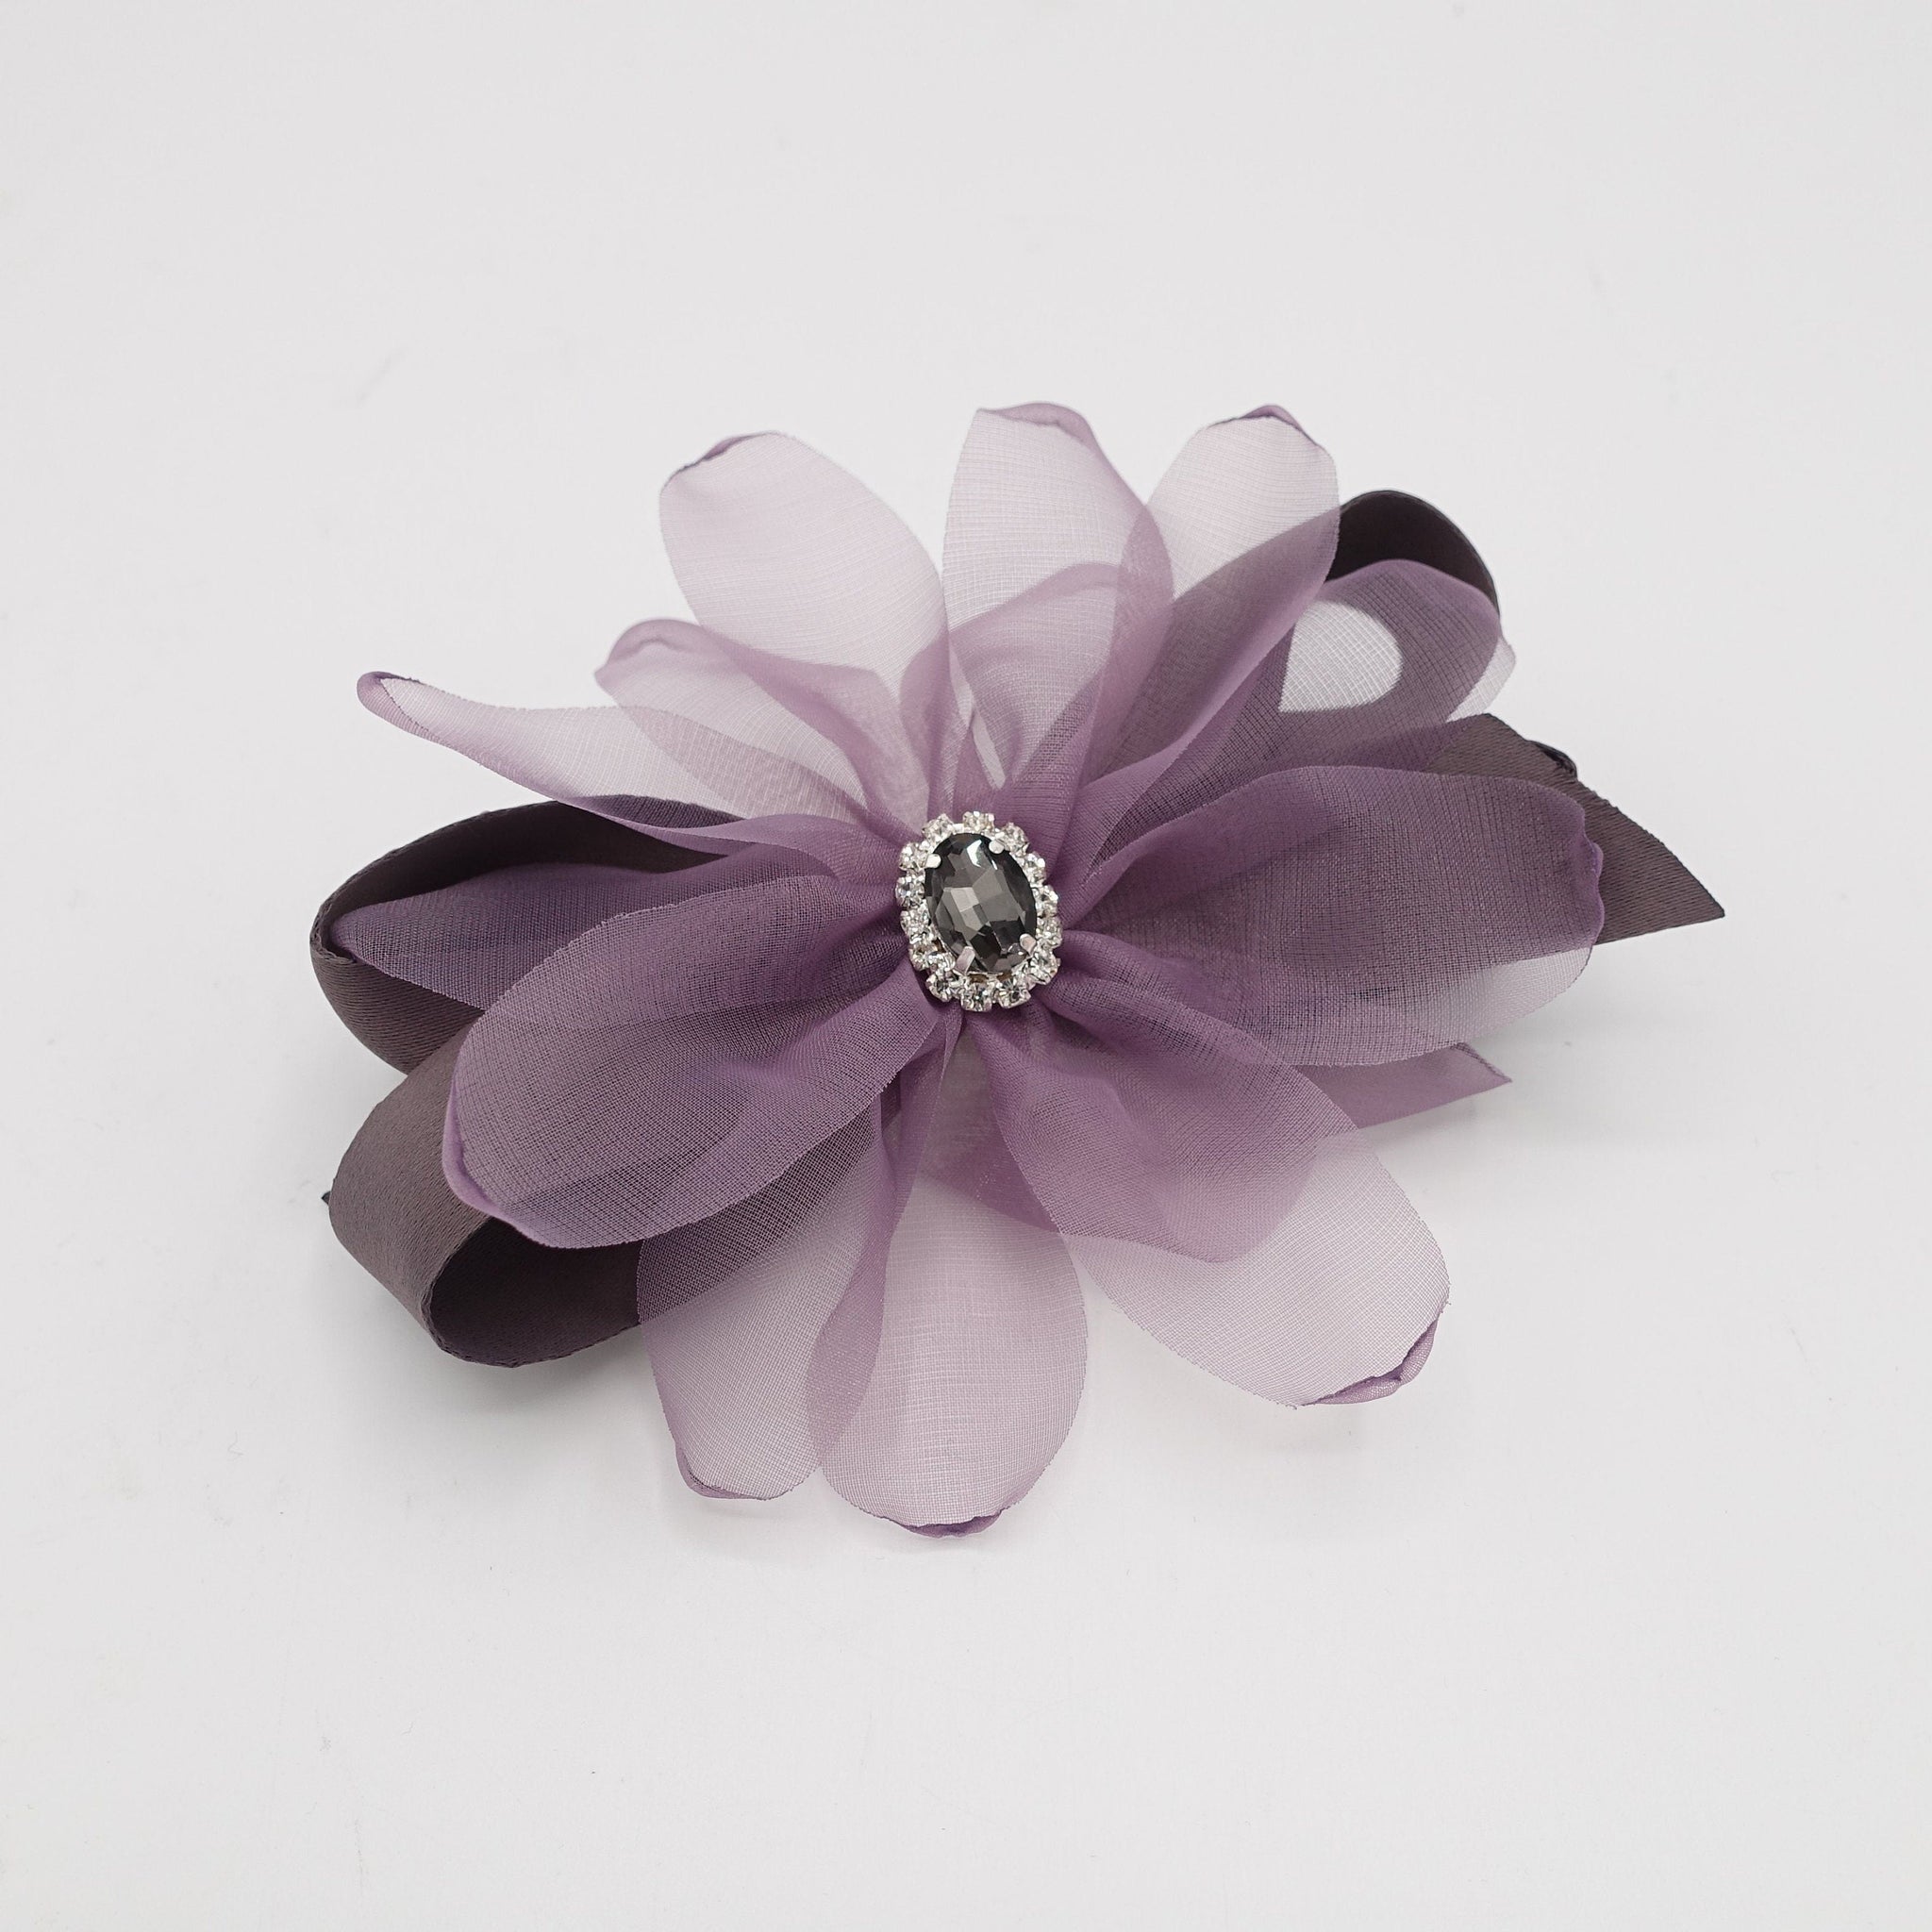 veryshine.com organza petal flower hair barrette rhinestone embellished hair bow women accessory